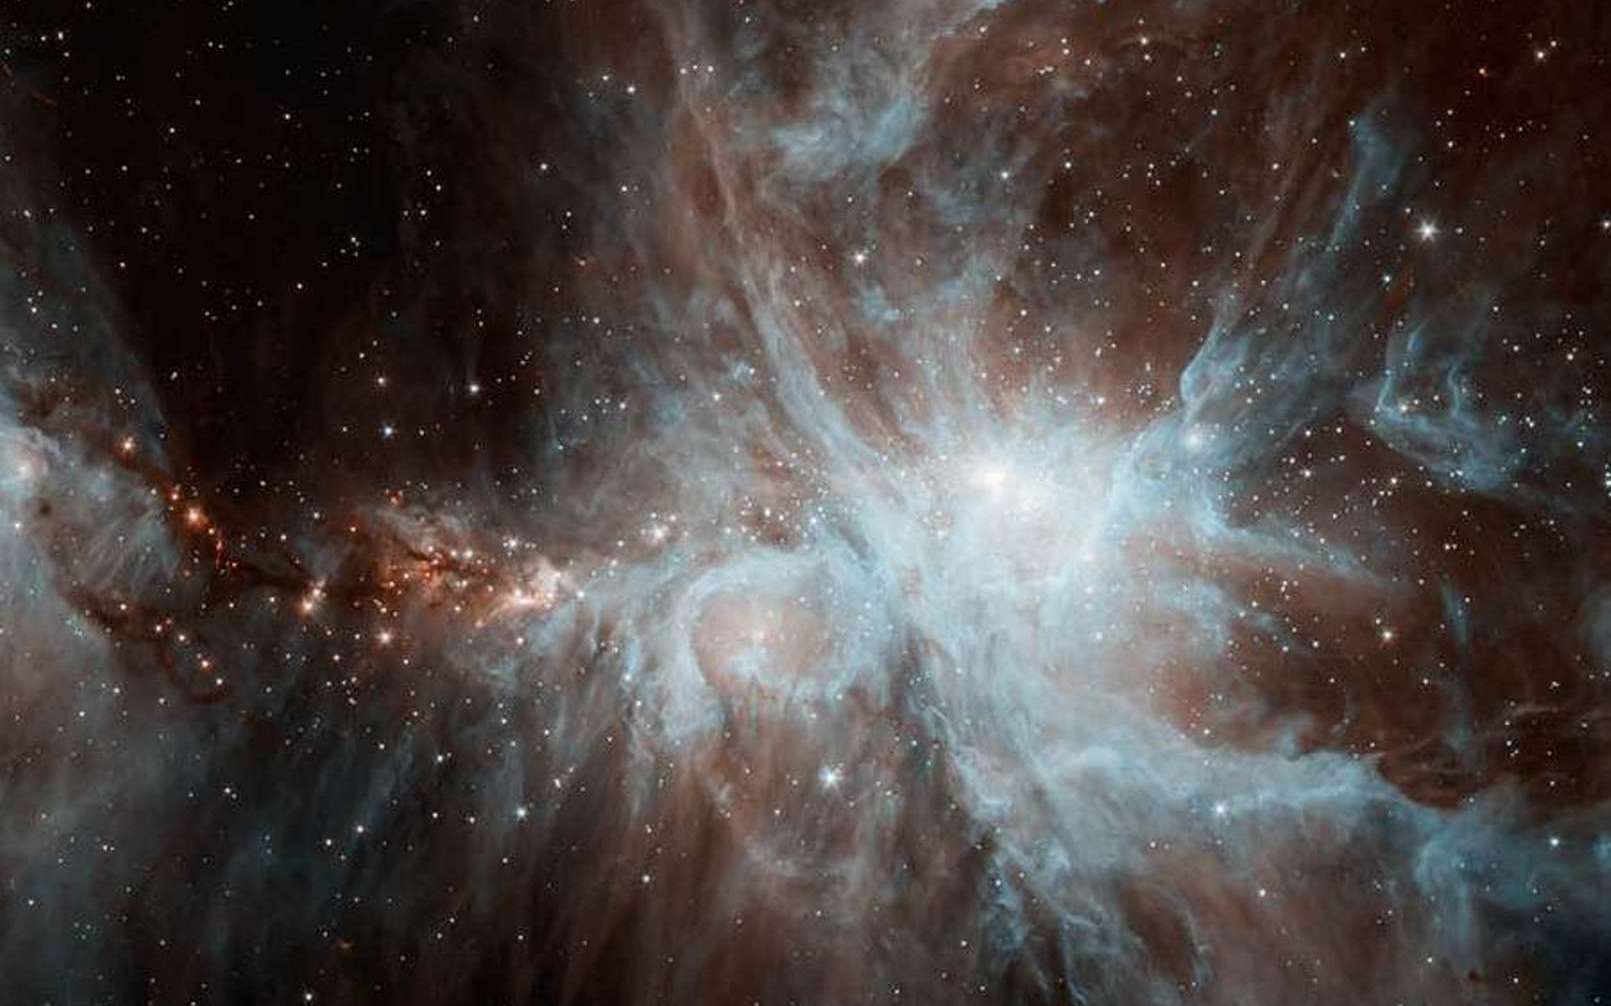 La nébuleuse d’Orion (vue ici par le télescope Spitzer) produit de la lumière polarisée circulairement à 17 % dans l’infrarouge. Selon les calculs, elle émettrait dans l’ultraviolet, un rayonnement capable de casser les liaisons covalentes (fortes) entre les atomes des molécules de glace. © CNRS (commentaire)/Nasa, JPL/Caltech, J. Stauffer (image)